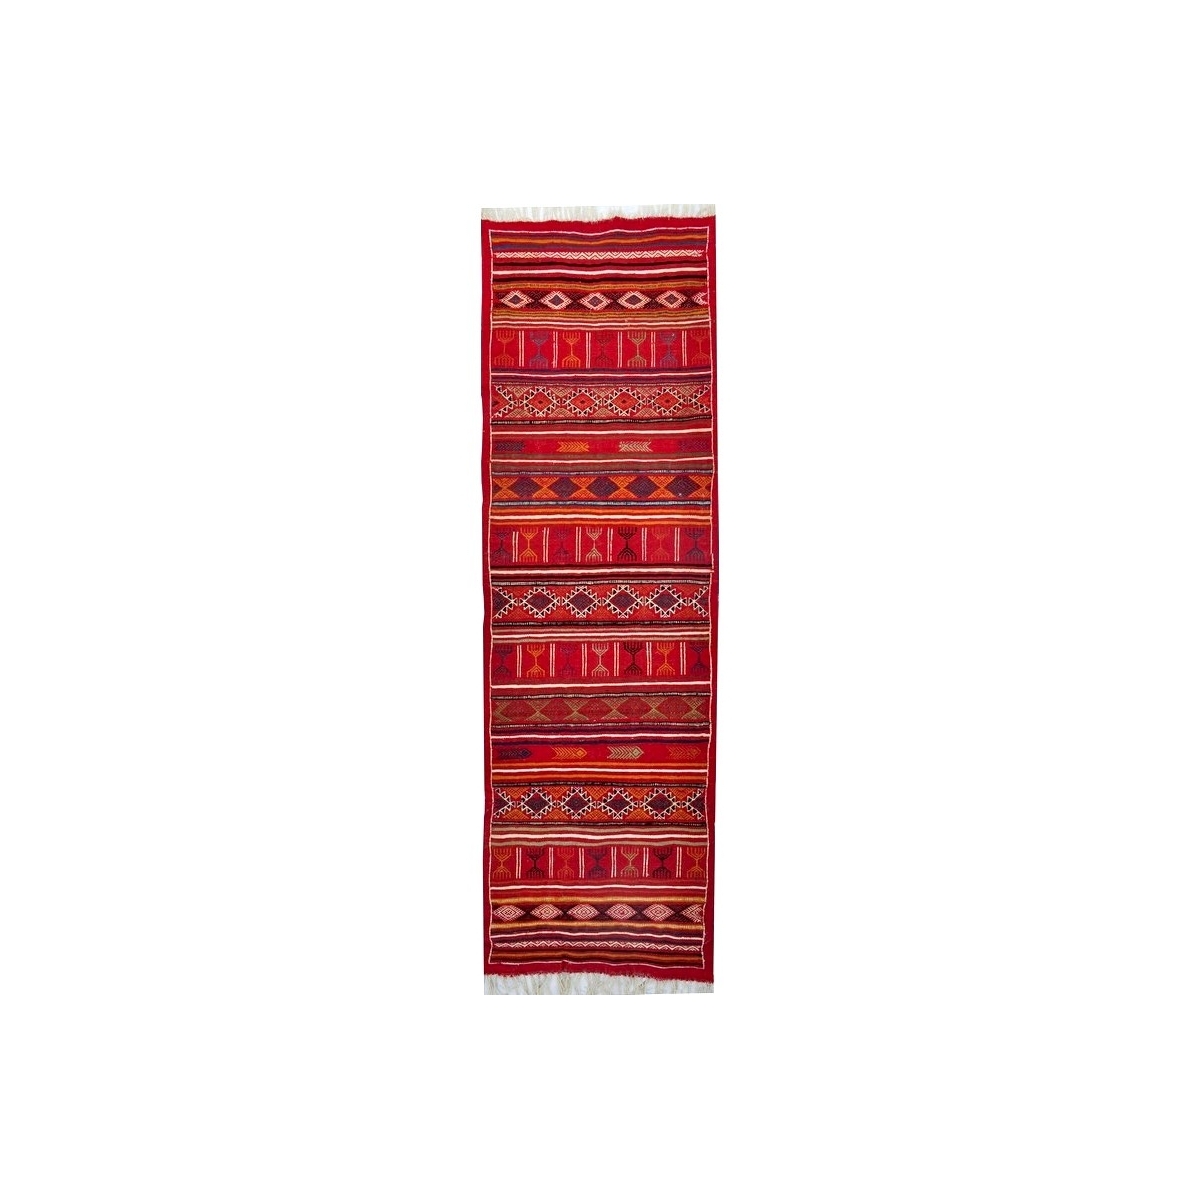 Tapis berbère Tapis Kilim long Tataouine 65x205 Rouge (Tissé main, Laine, Tunisie) Tapis kilim tunisien style tapis marocain. Ta